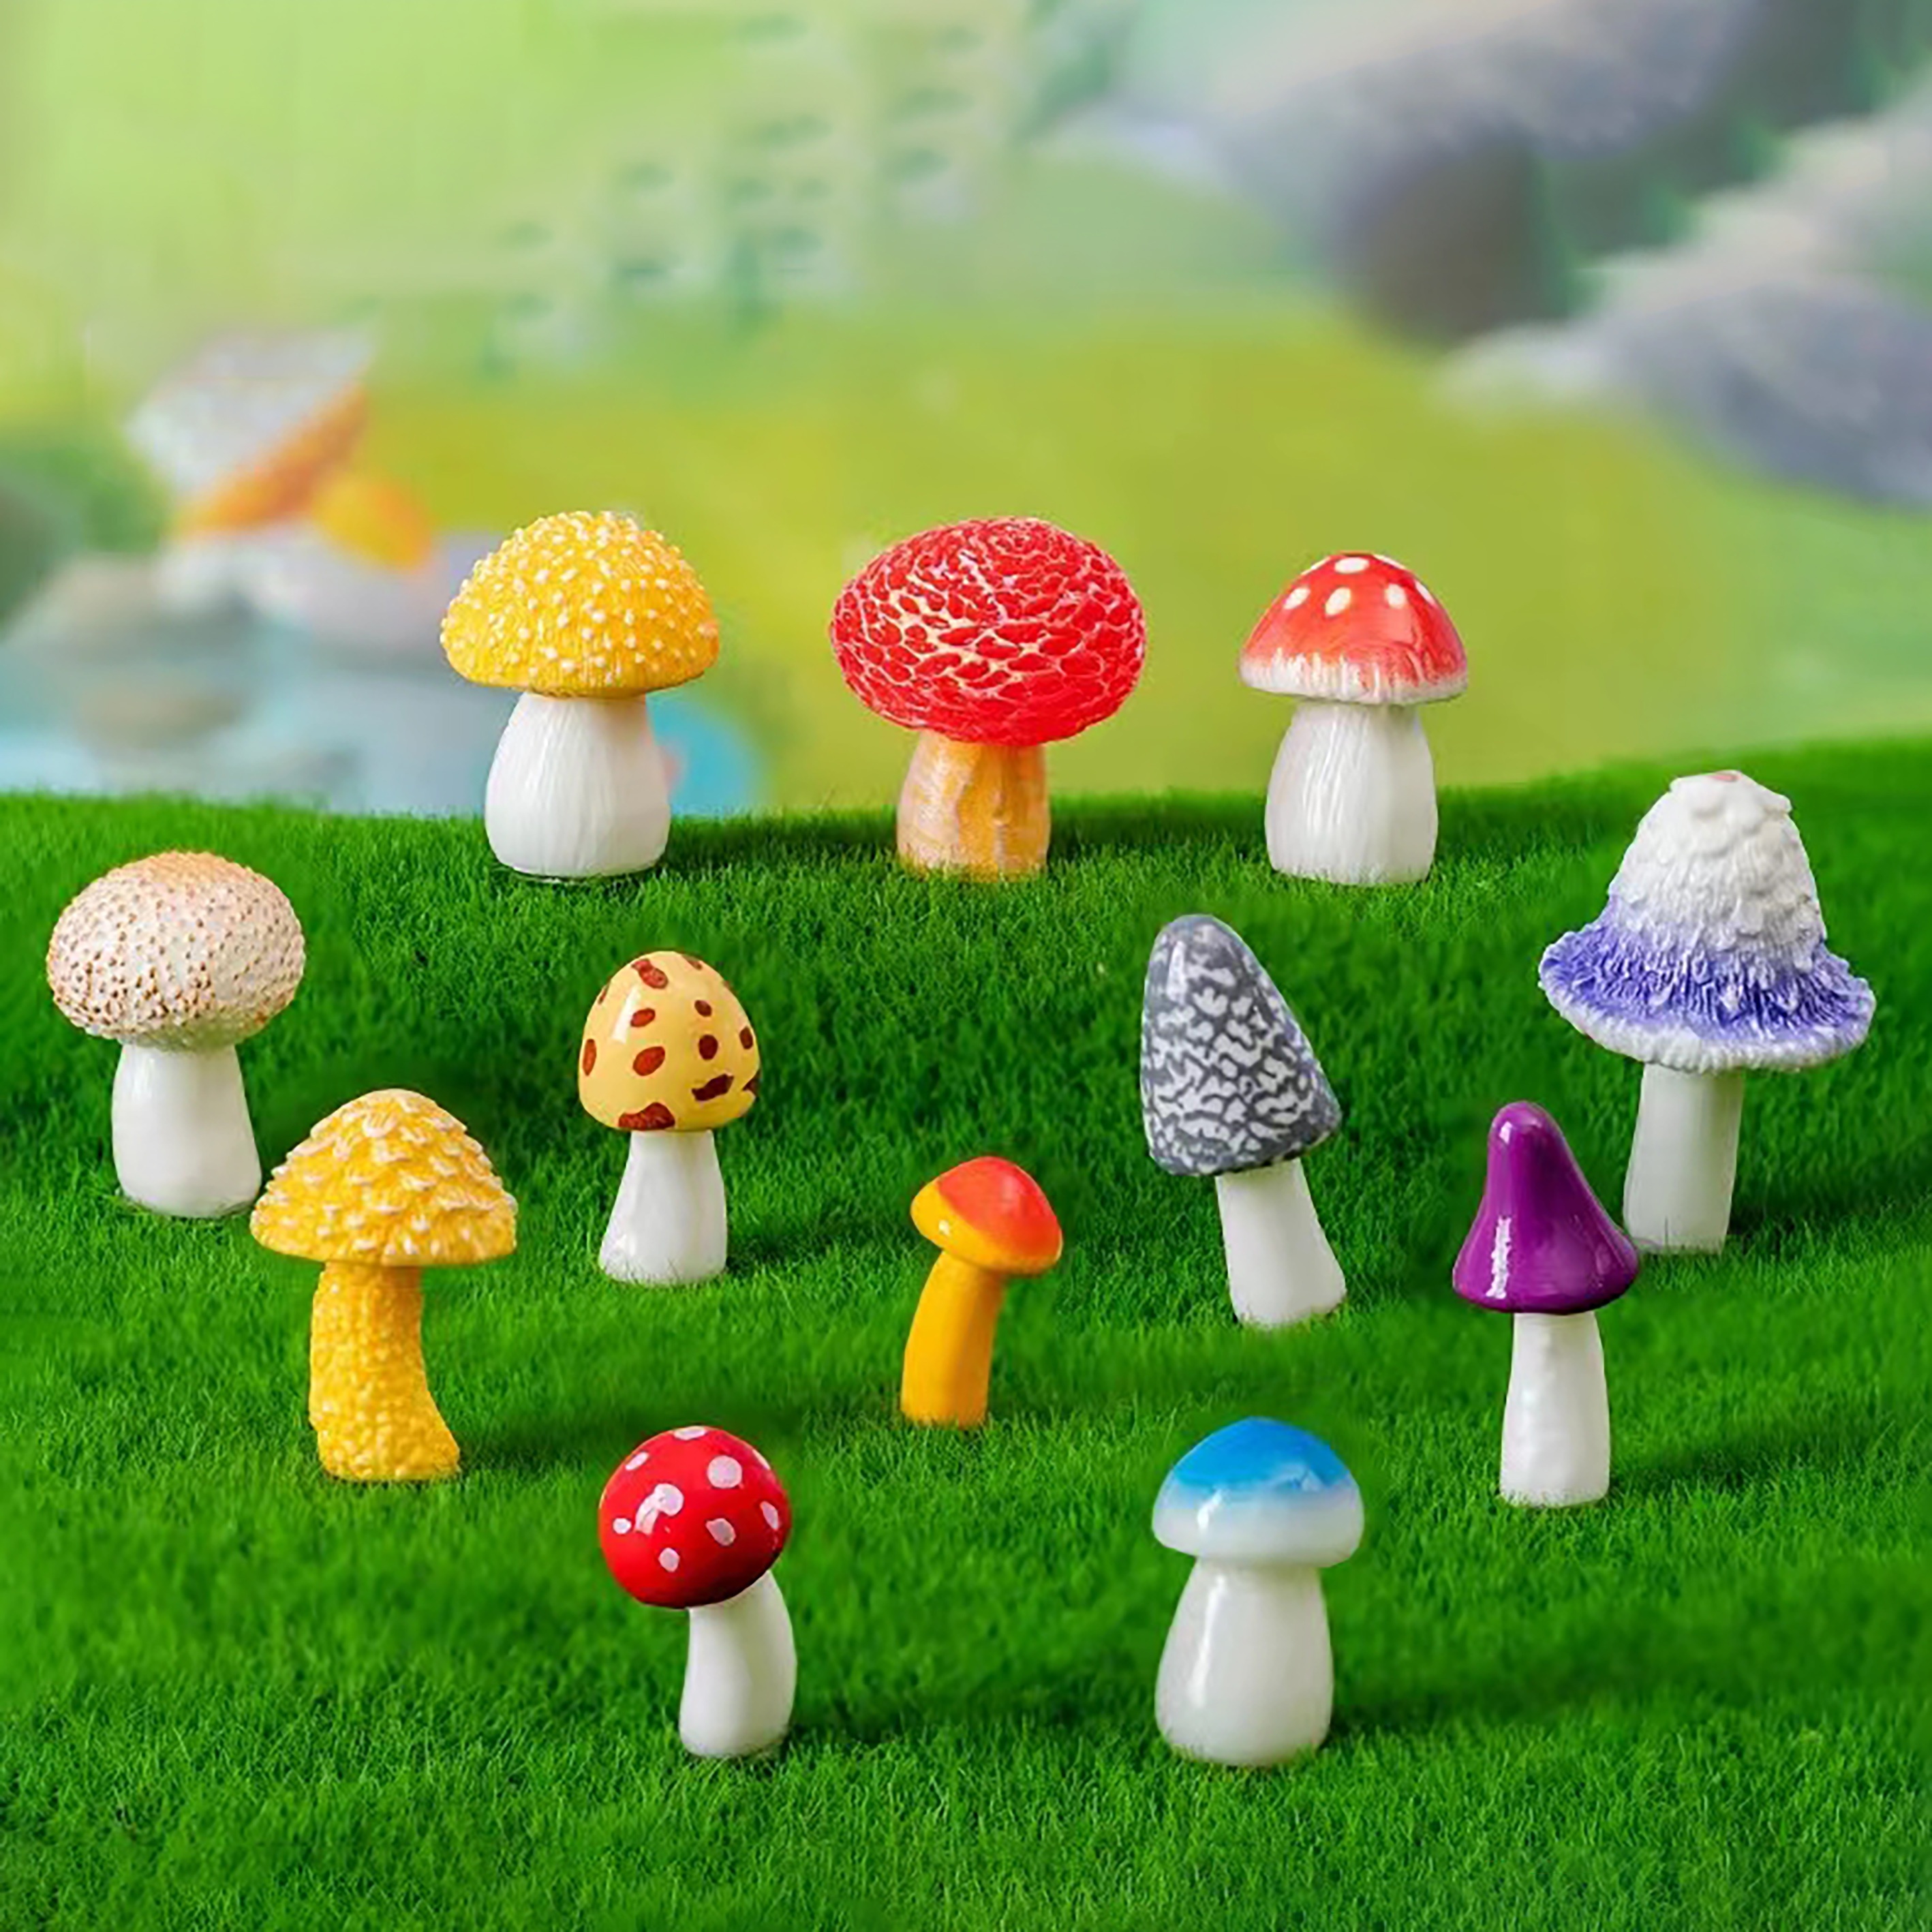 Aquarium Decoration Mushroom Ornaments Fairy Resin Articraft For